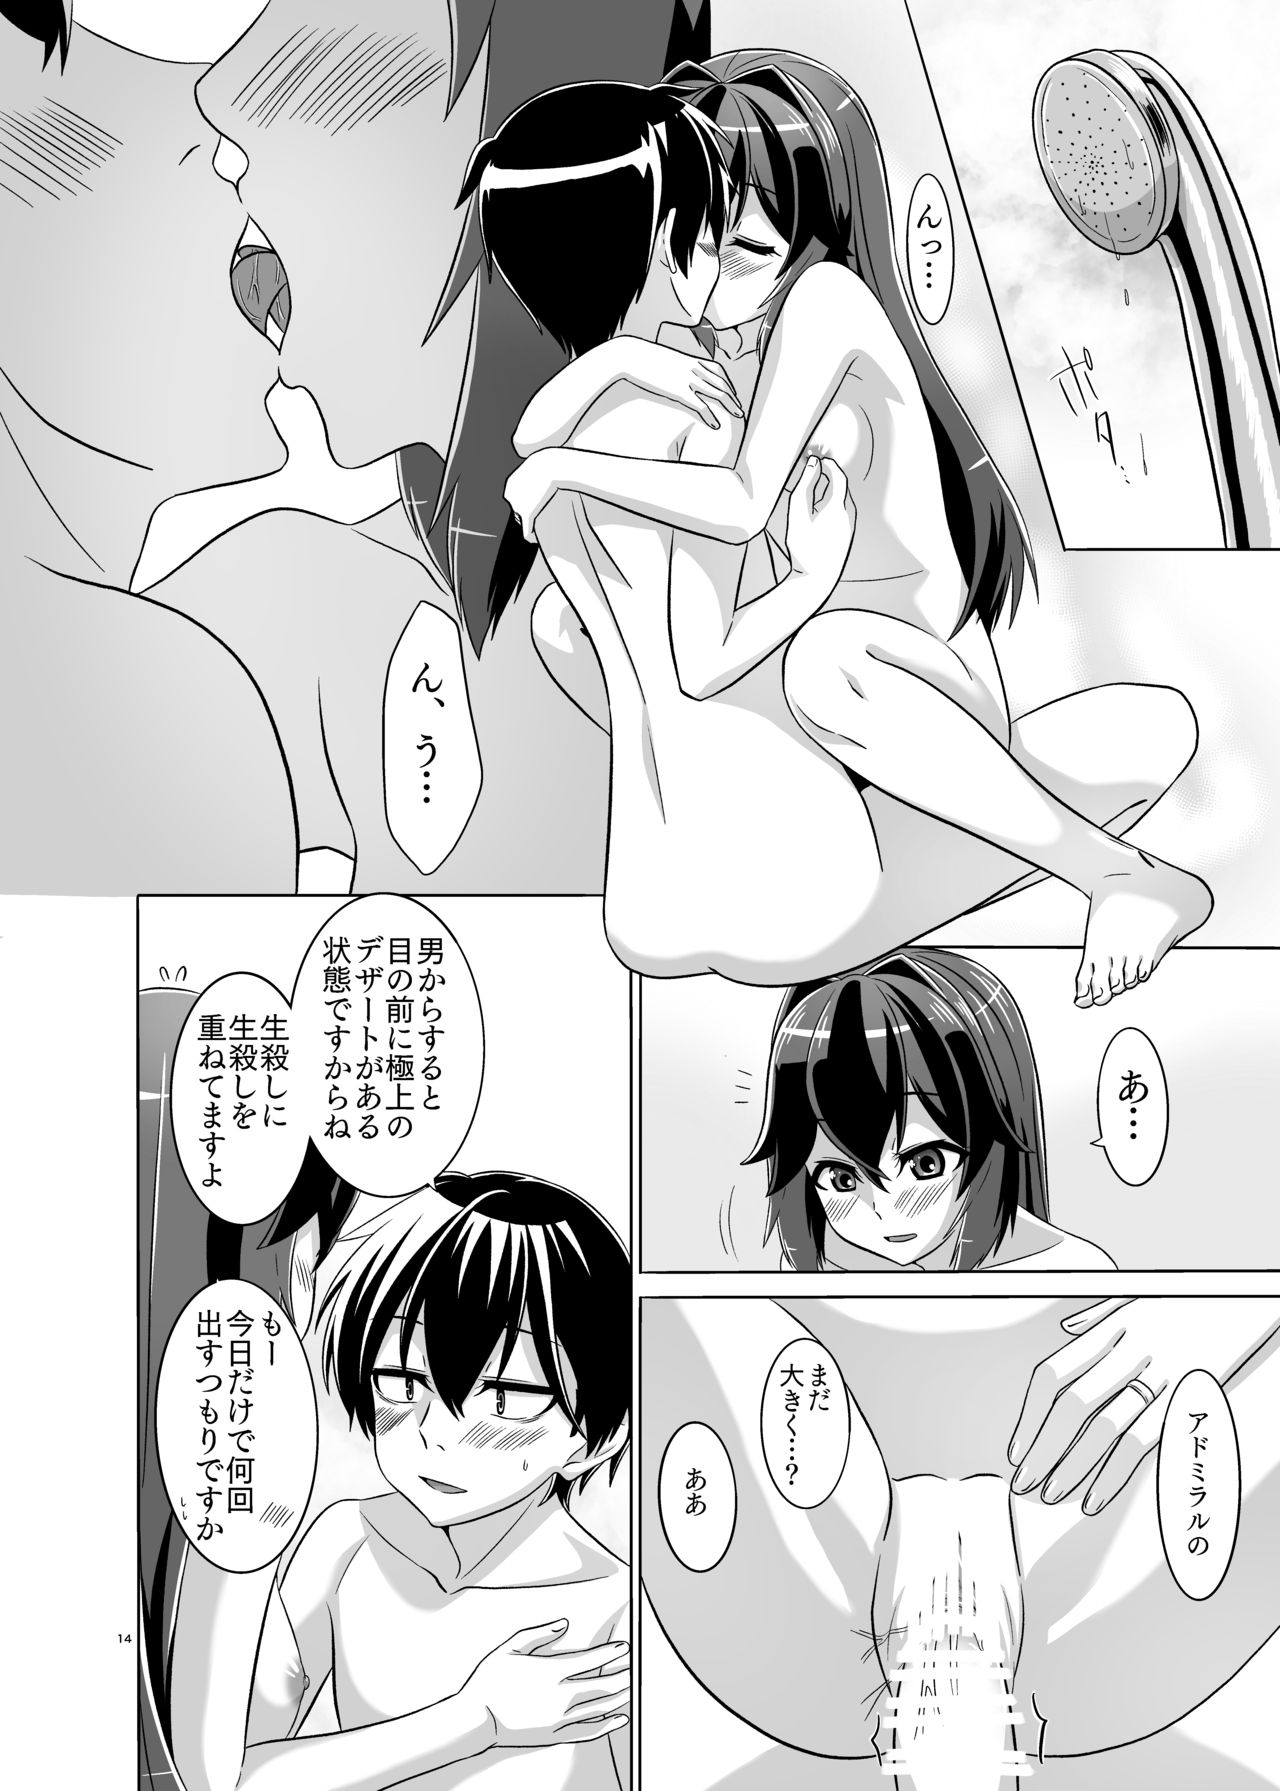 [Torutī-ya] Itsumo no yoru futari no yotogi⑵ (Warship Girls R) page 15 full